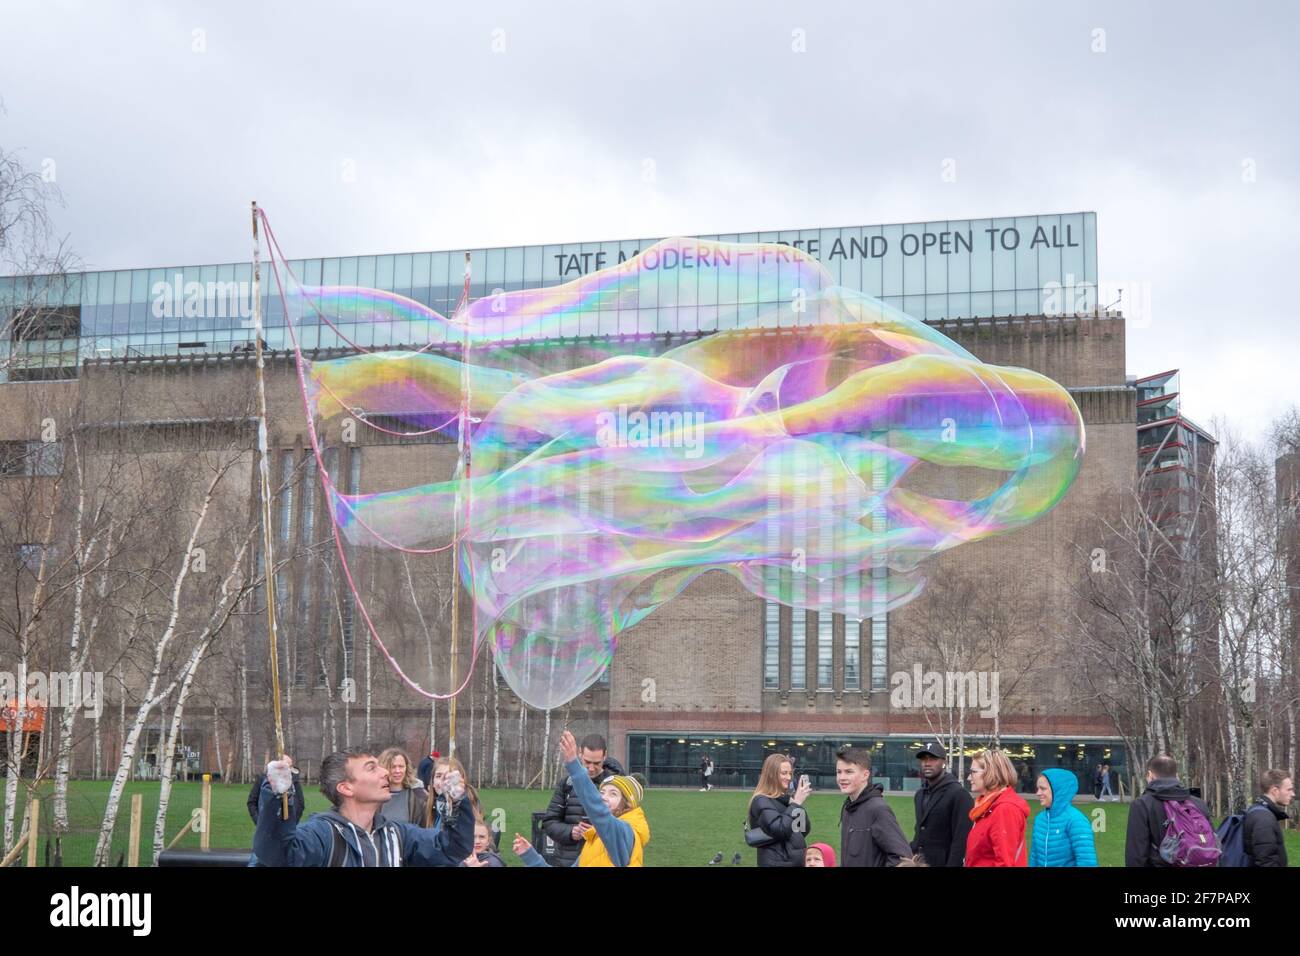 Londres, Angleterre, Royaume-Uni - 15 mars 2020 - des gens ont été amusés par un homme avec des bulles géantes devant la Tate Modern Gallery for art sur la rive sud Banque D'Images